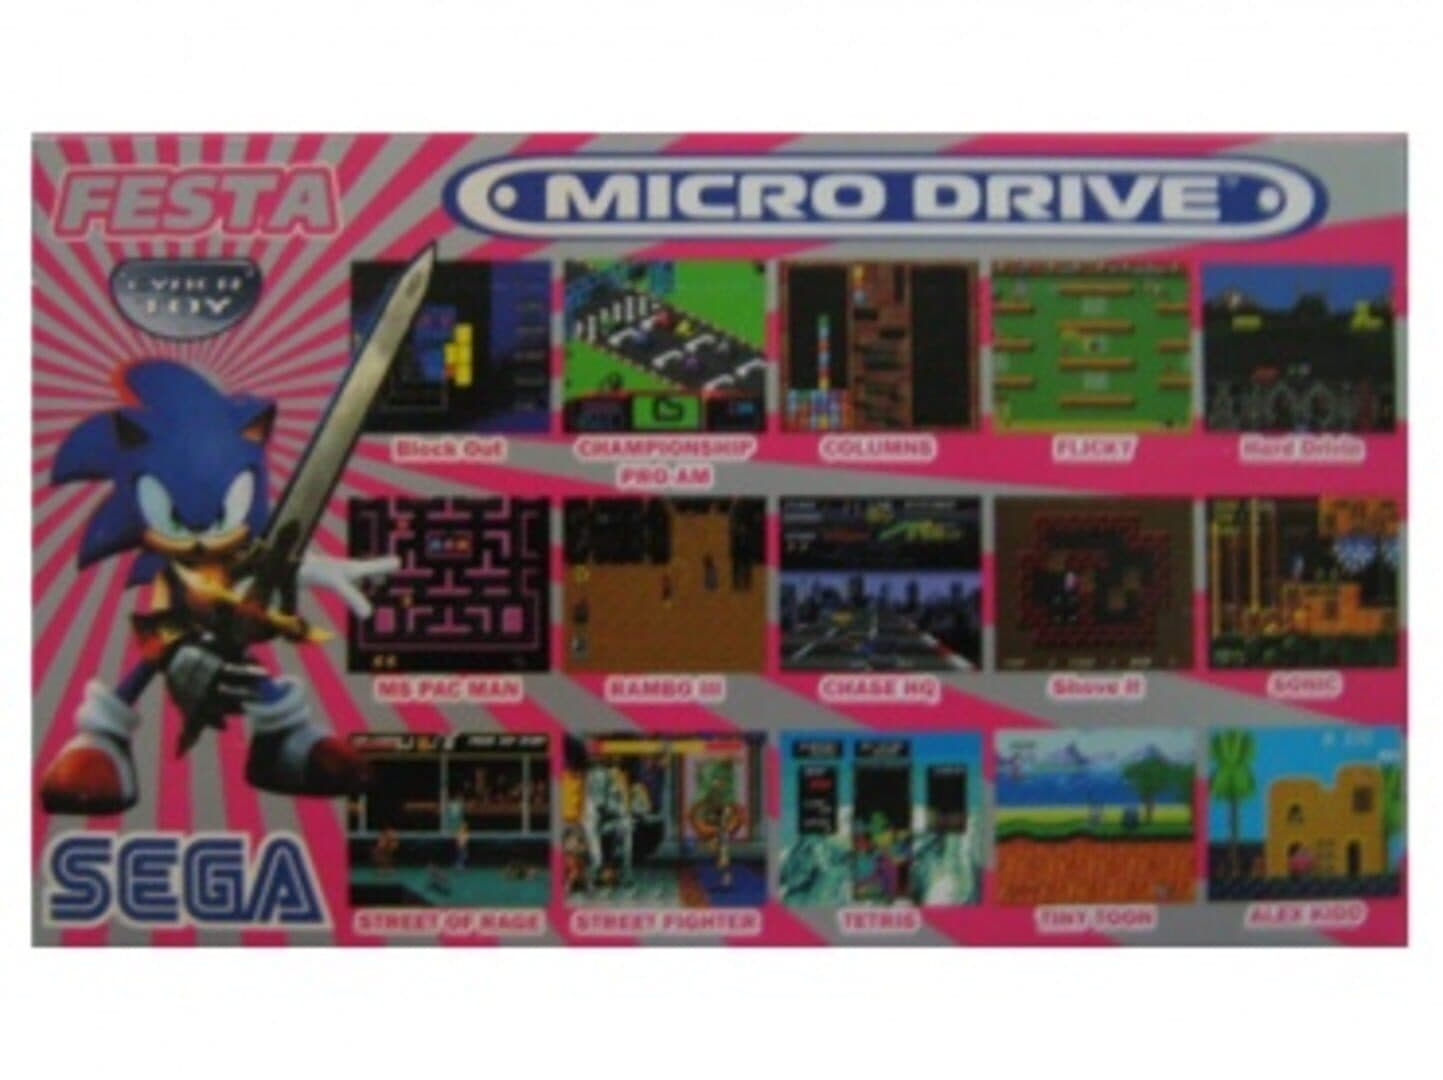 Micro Drive Festa Image